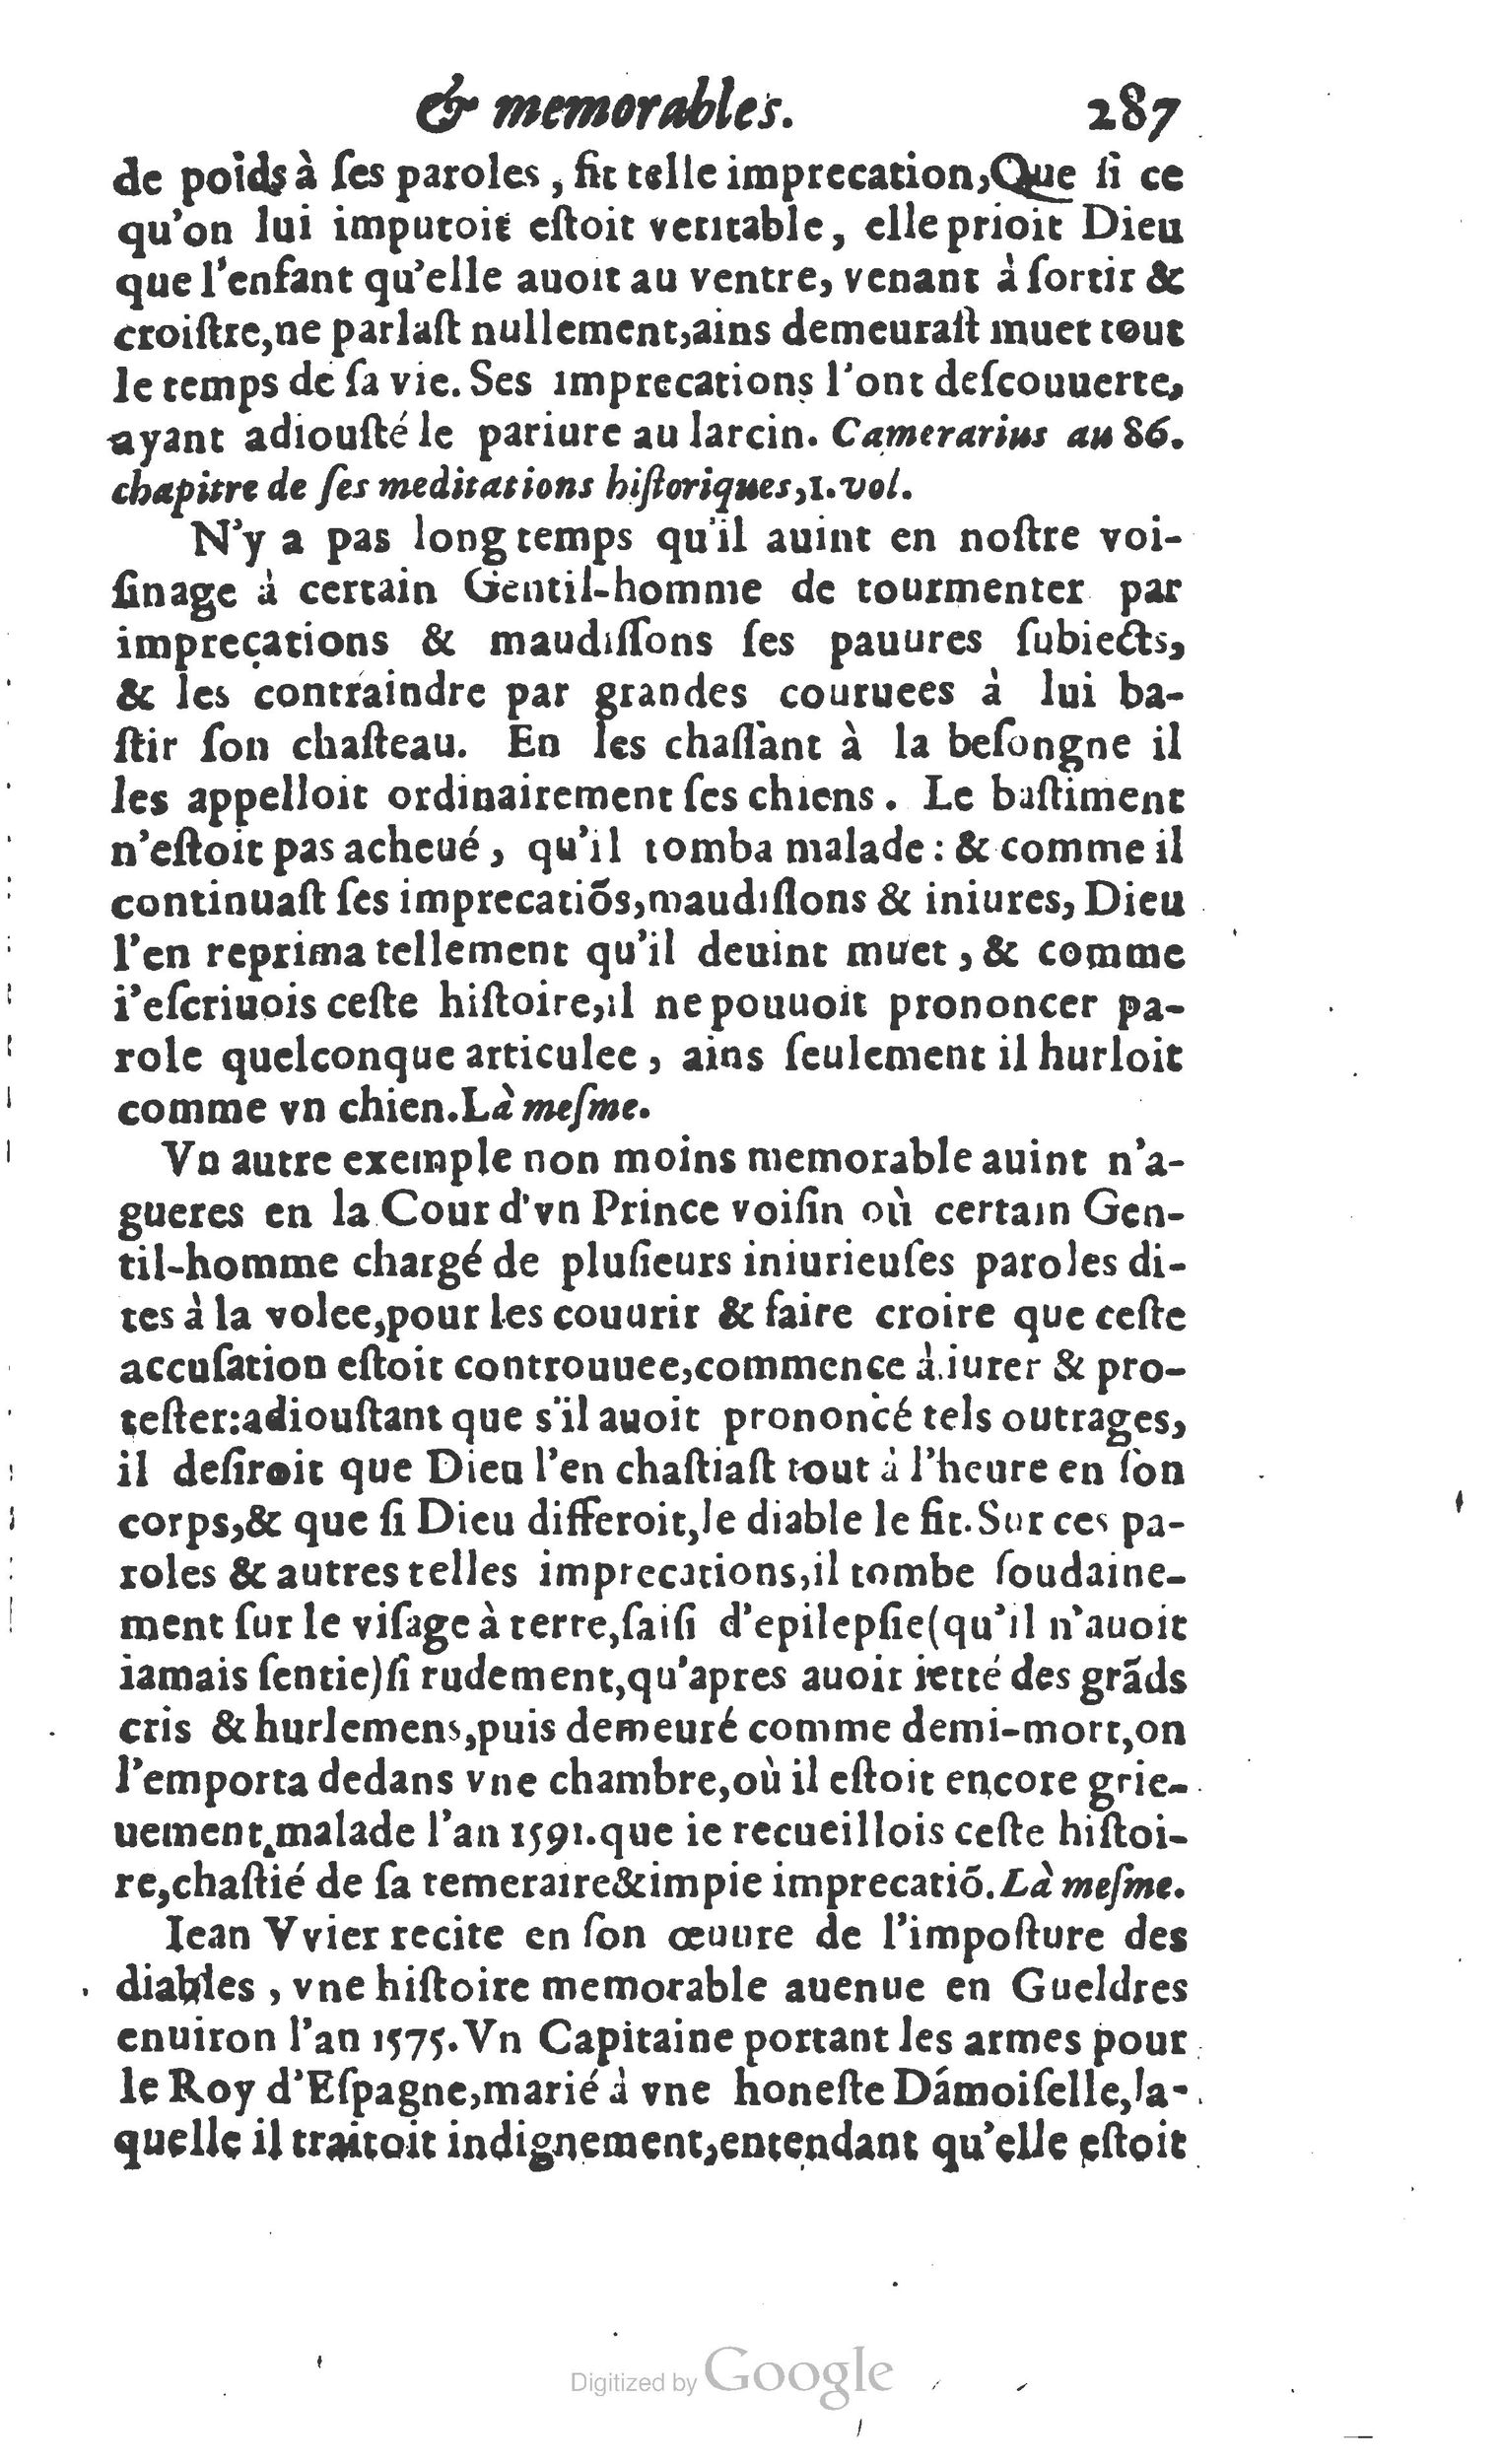 1610 Trésor d’histoires admirables et mémorables de nostre temps Marceau Princeton_Page_0308.jpg